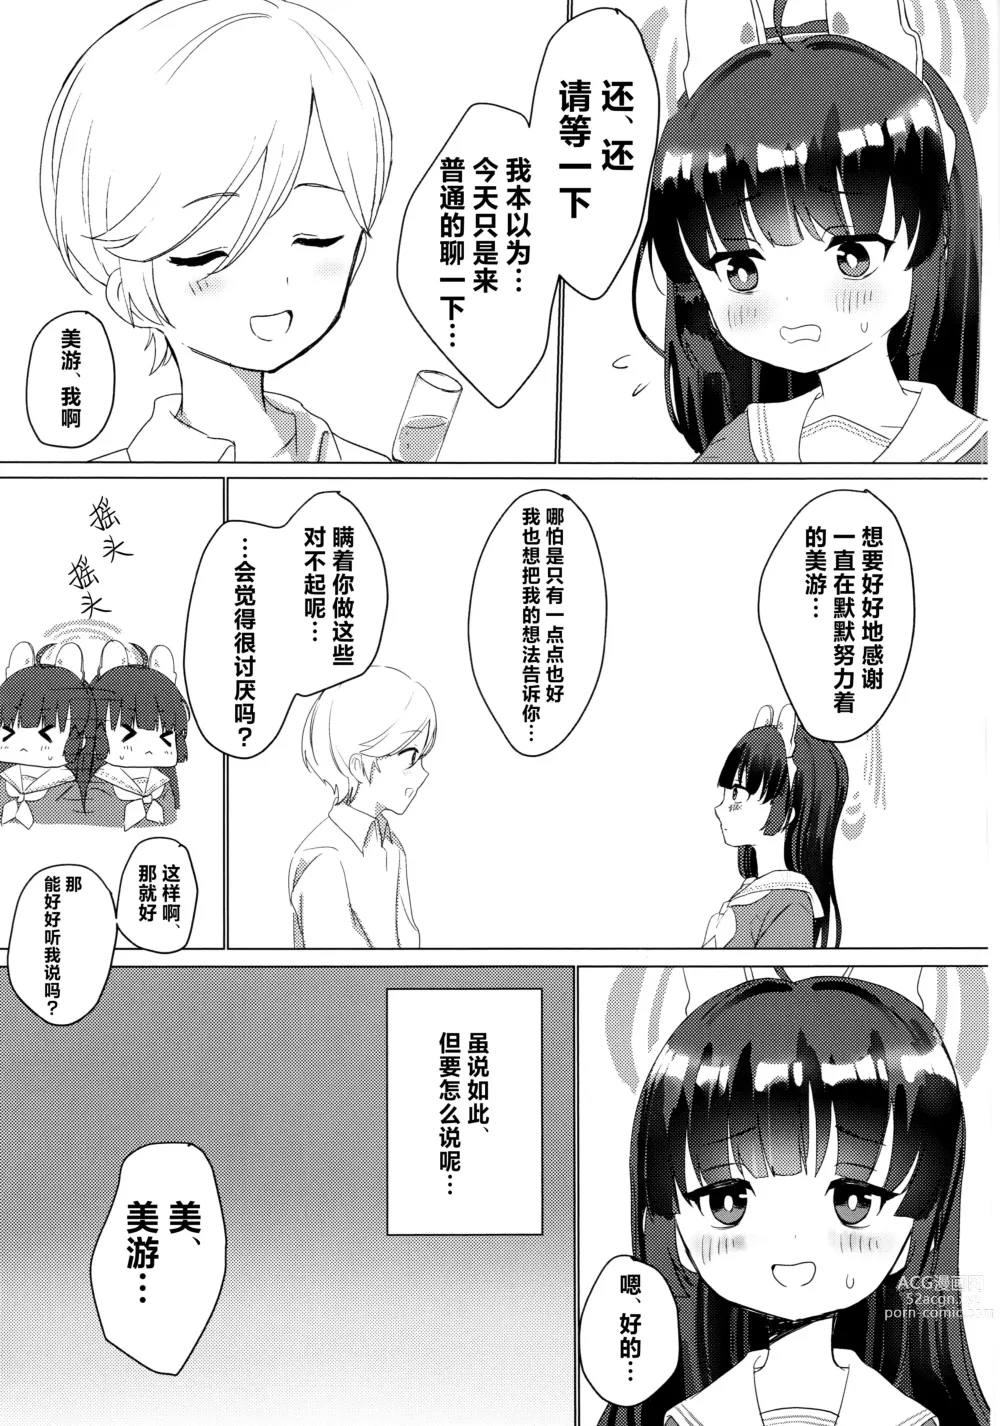 Page 6 of doujinshi Kasumizawa Miyu o Amayakashitai!